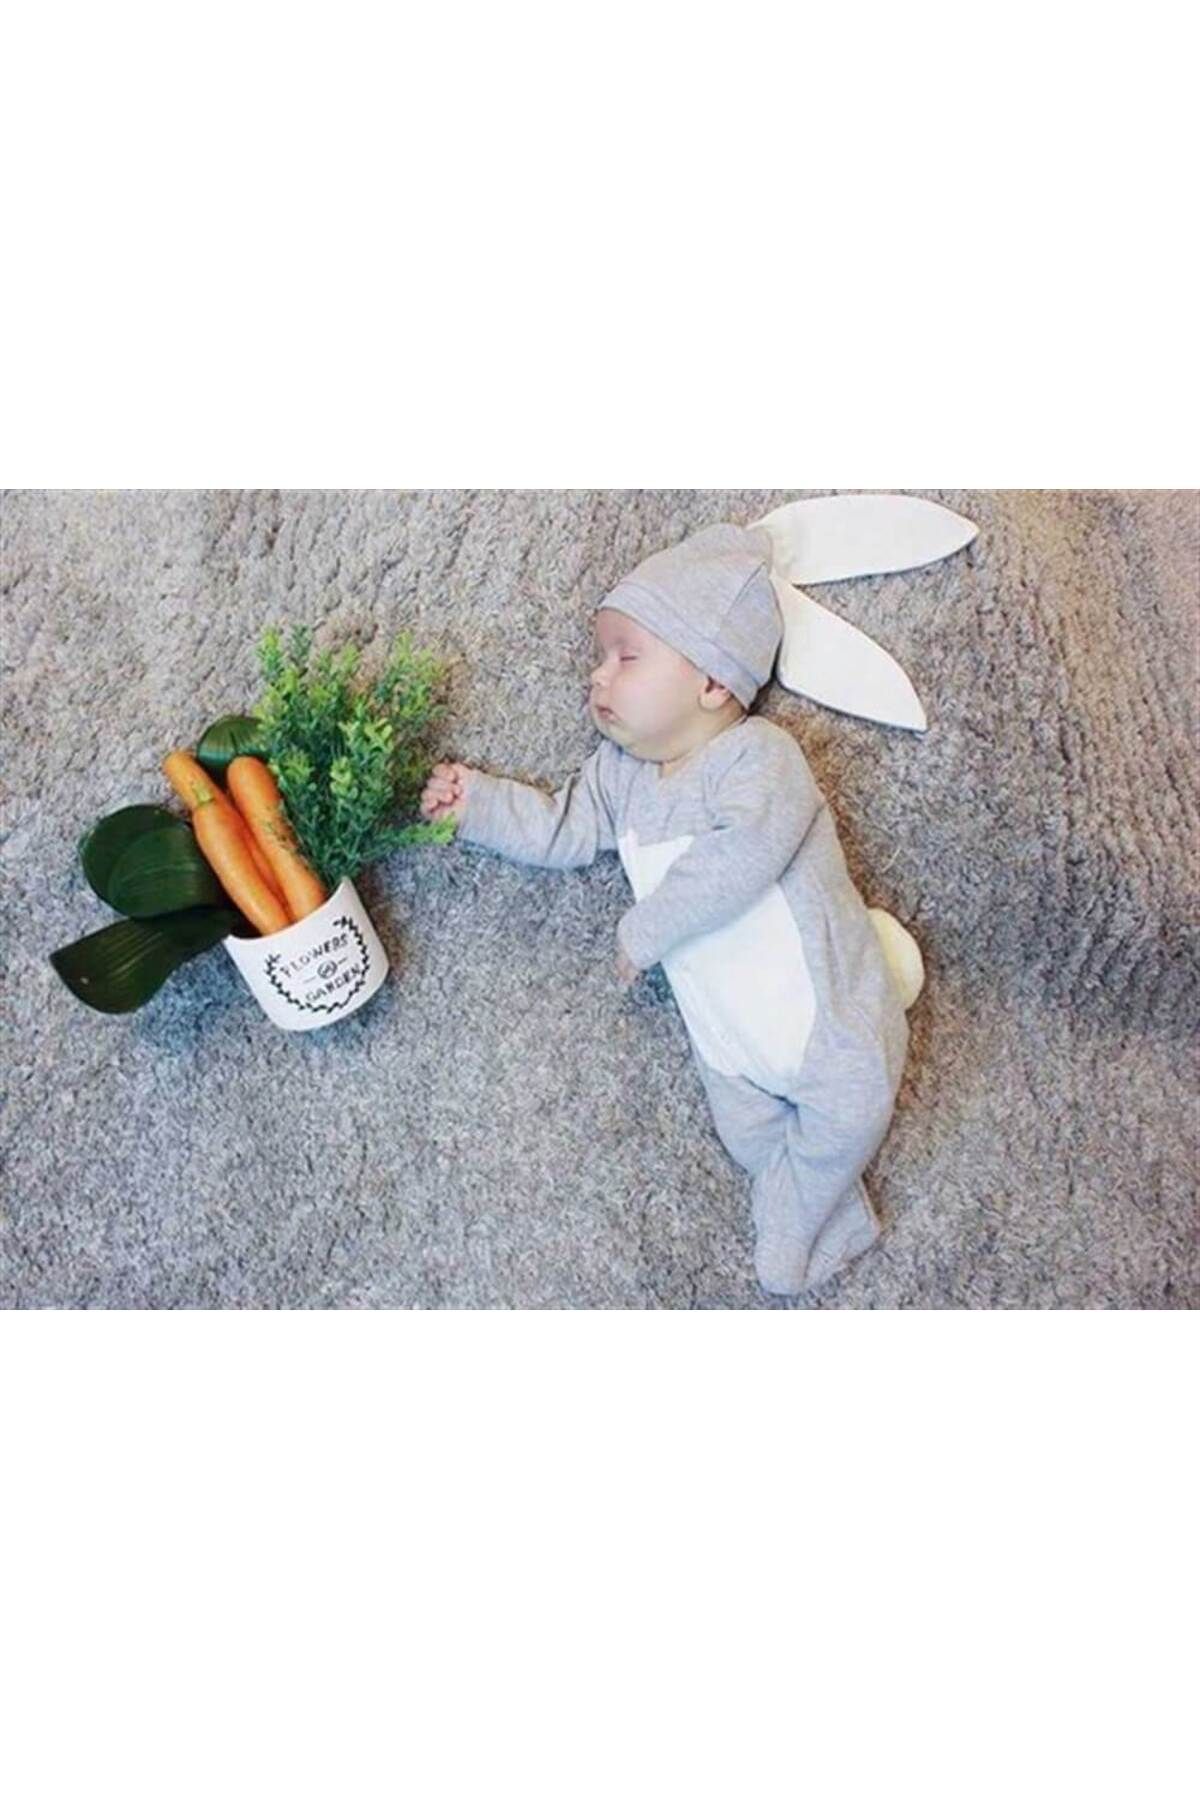 Mini Ropa Gri Renk Bebek Tavşan Ponponlu Tavşan Kulaklı Tulum Bebek Hediyesi Bebek Fotoğtaf Çekimi Ürünü